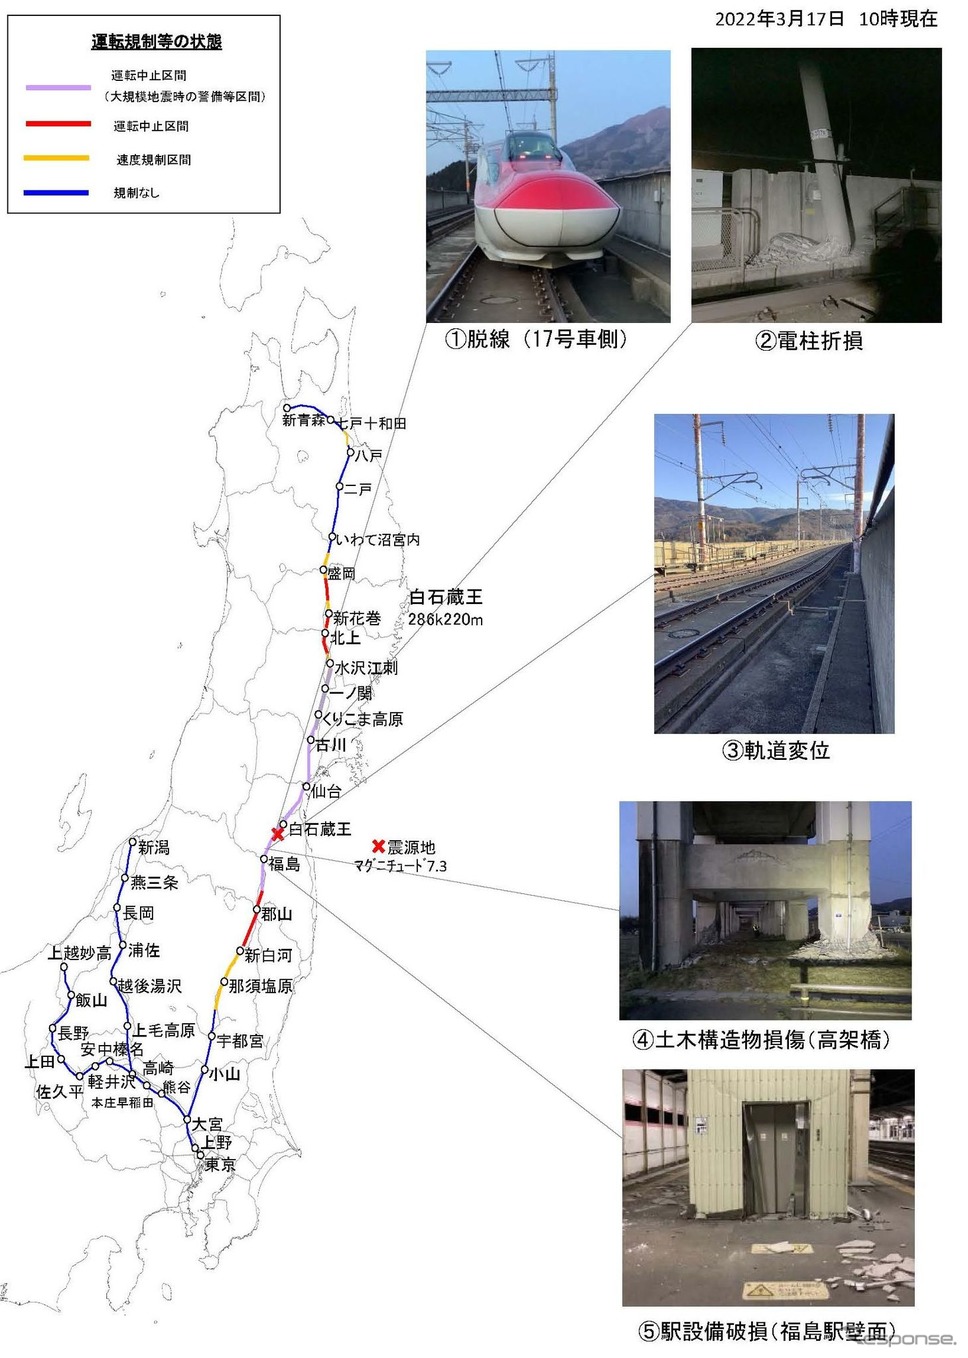 3月17日10時時点で判明している東北新幹線の被災状況。JR東日本では「現在も設備点検中のため新たな被害箇所が見つかる可能性や、余震等により新たな被害が発生する可能性があります」としている。《資料提供 東日本旅客鉄道》